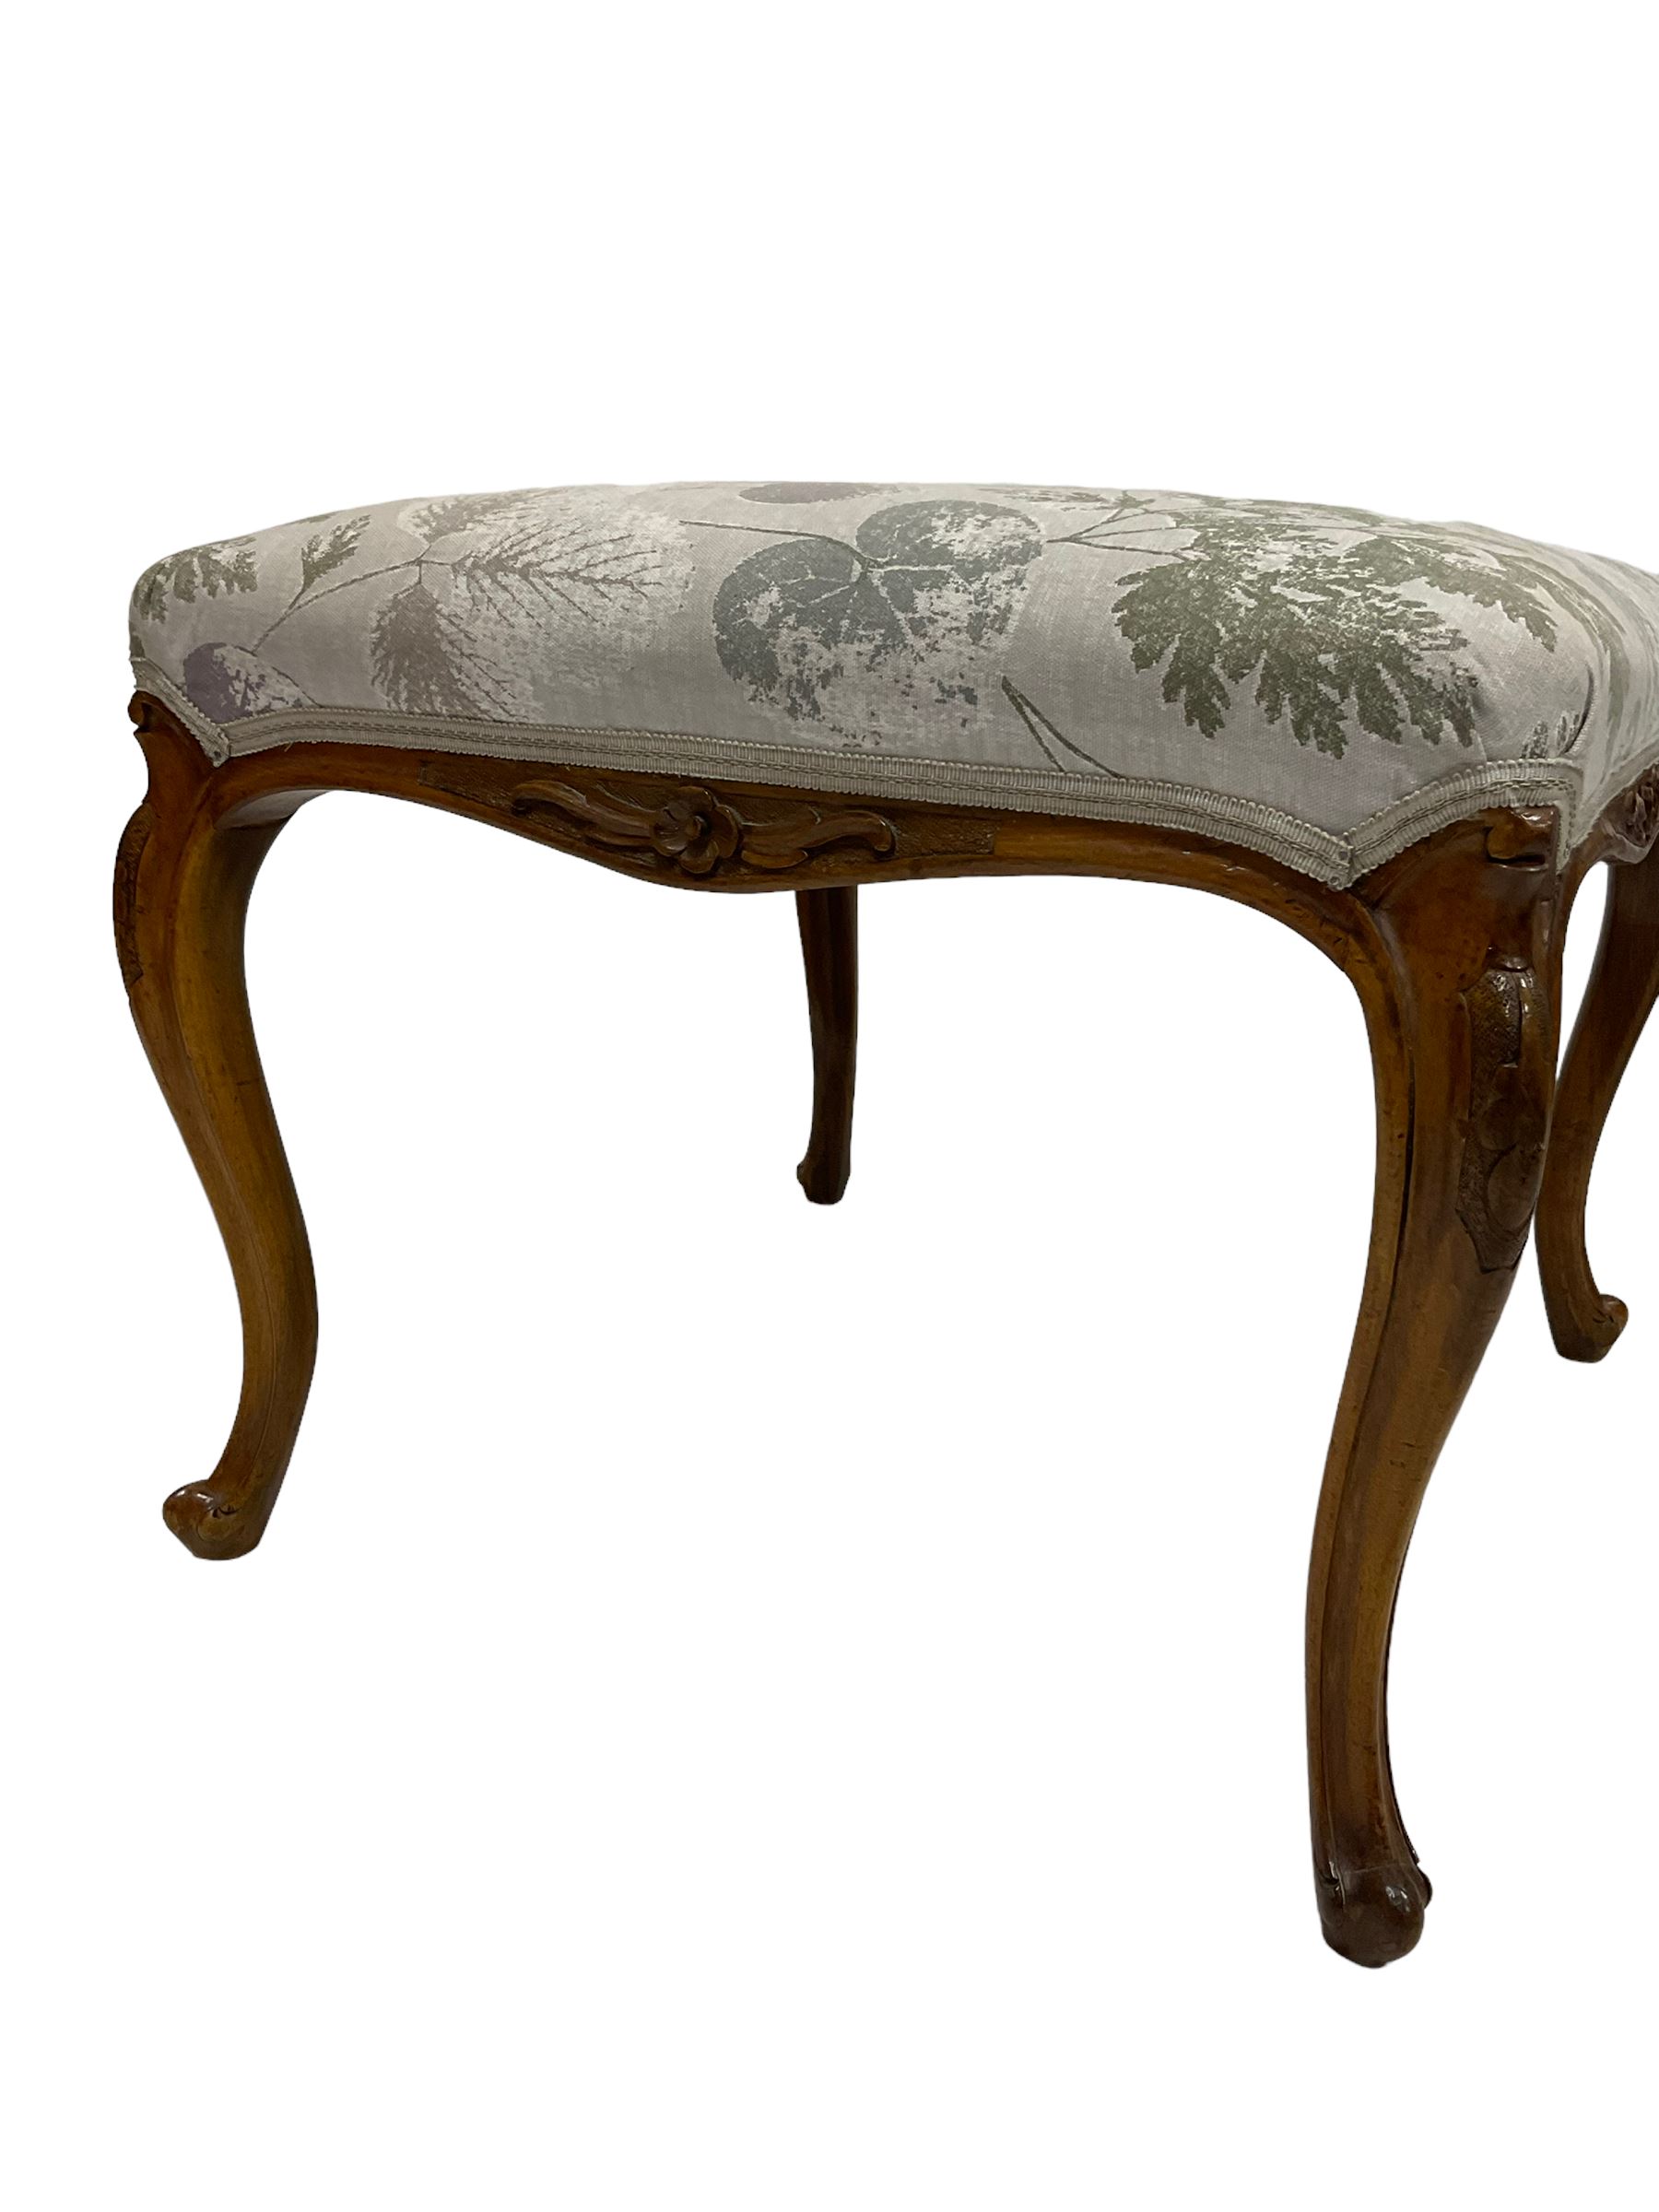 French style walnut stool - Image 3 of 3